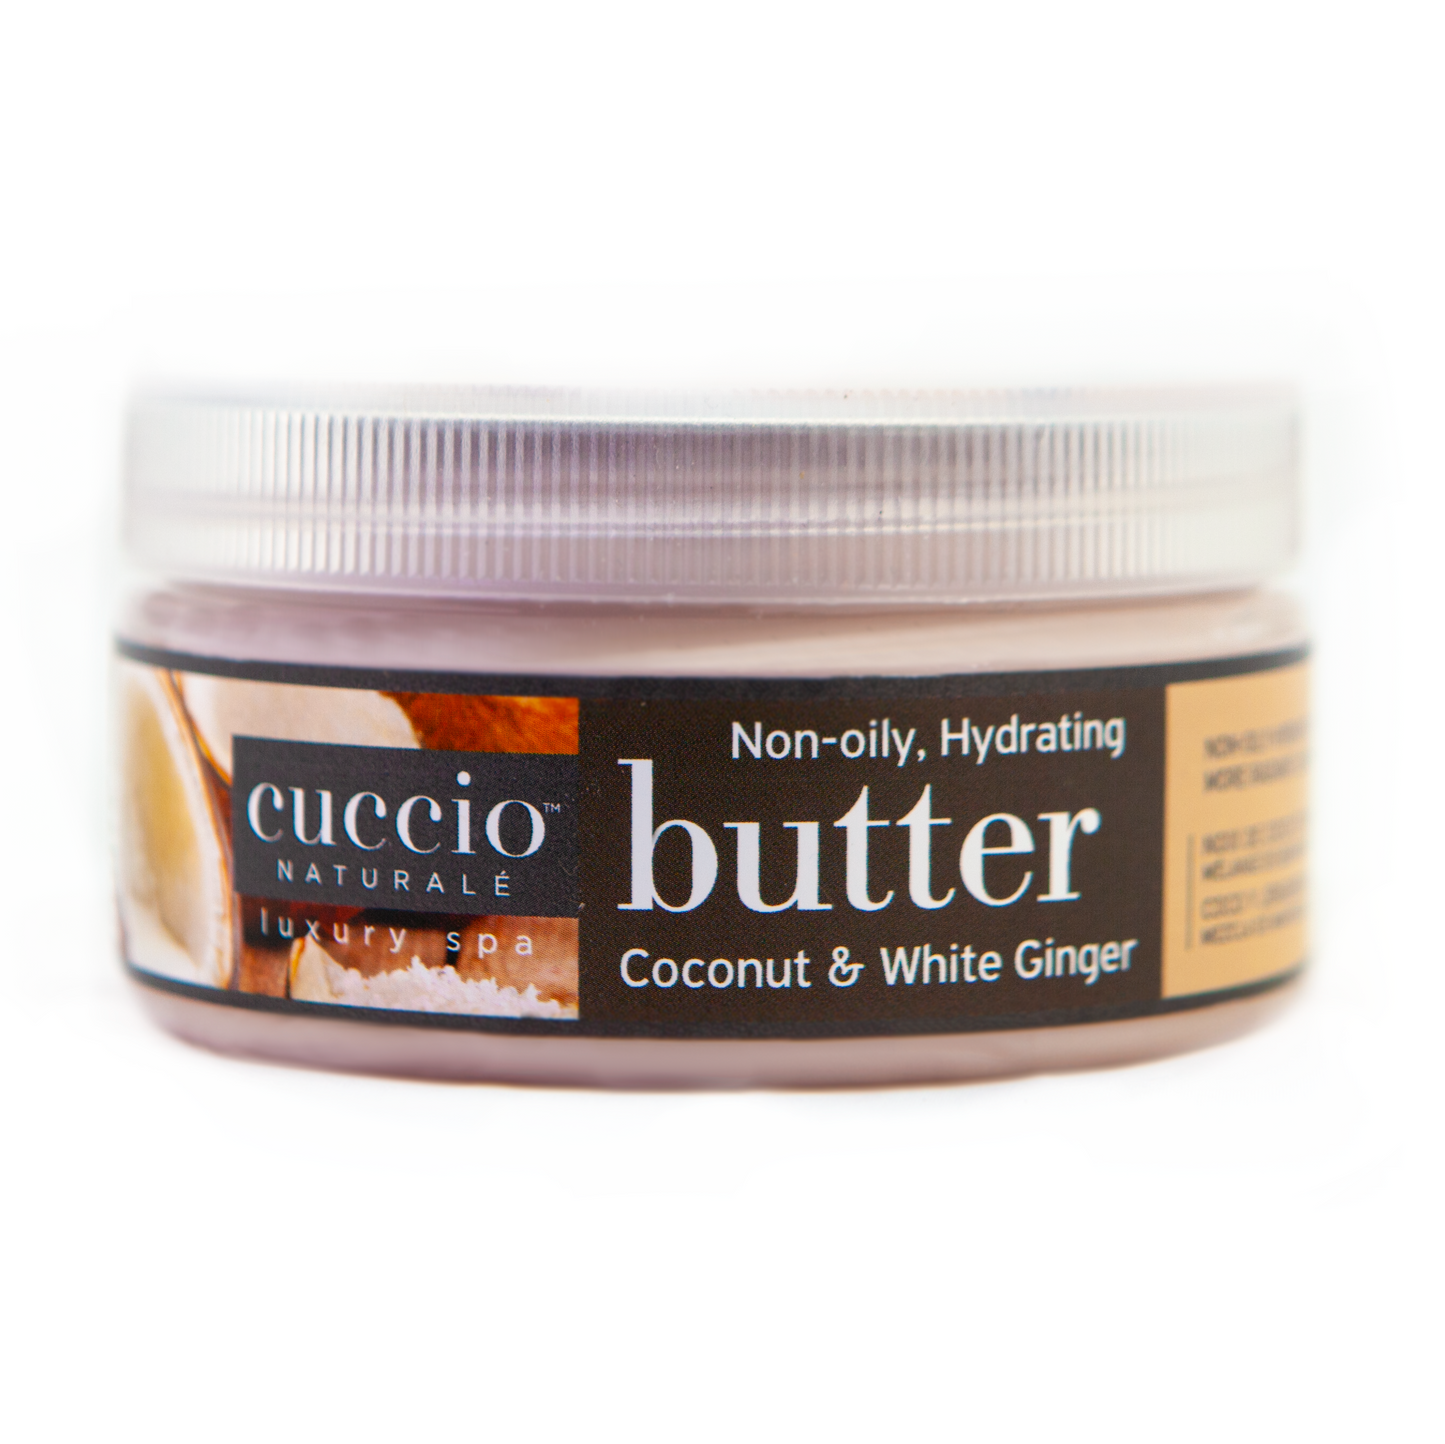 Cuccio Naturale Body Butter 8oz